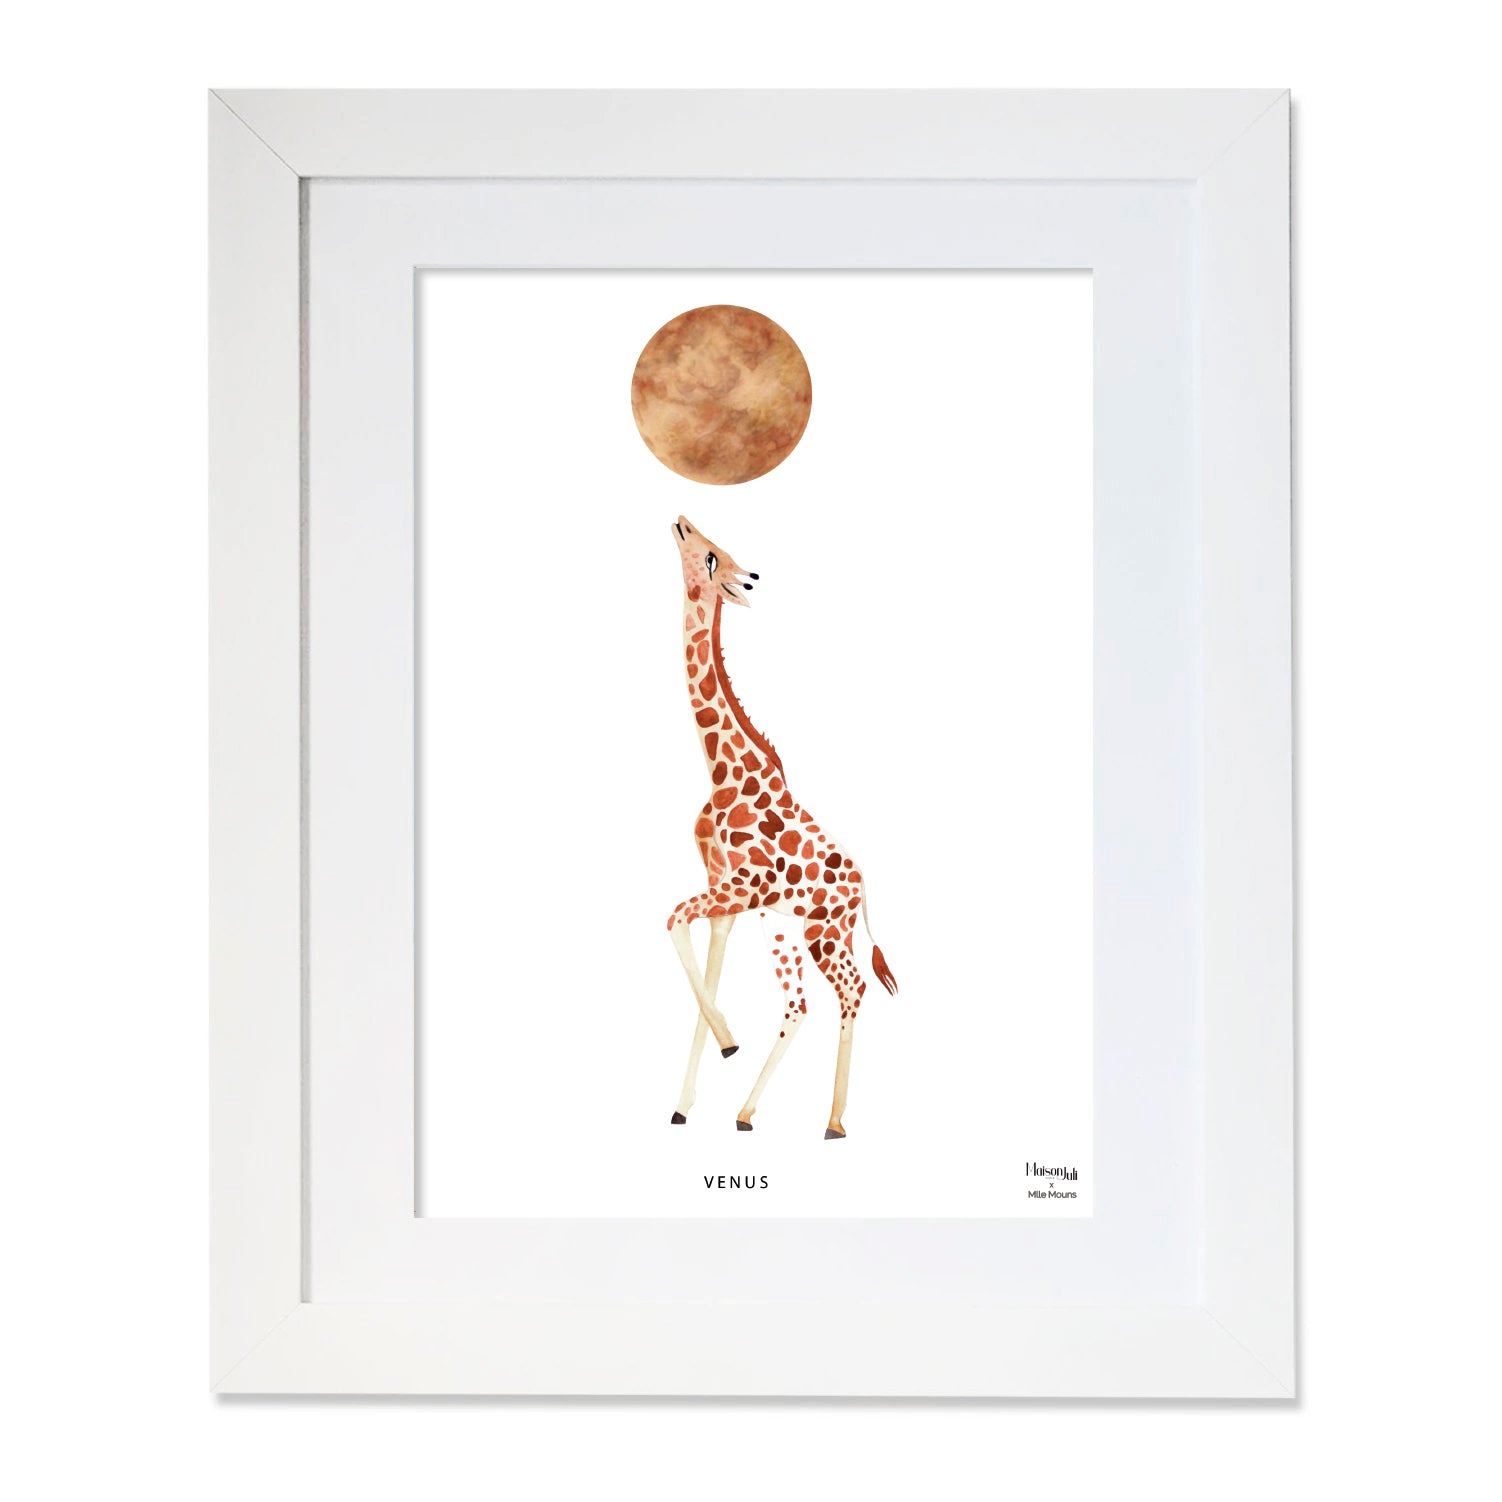 The Giraffe and Venus